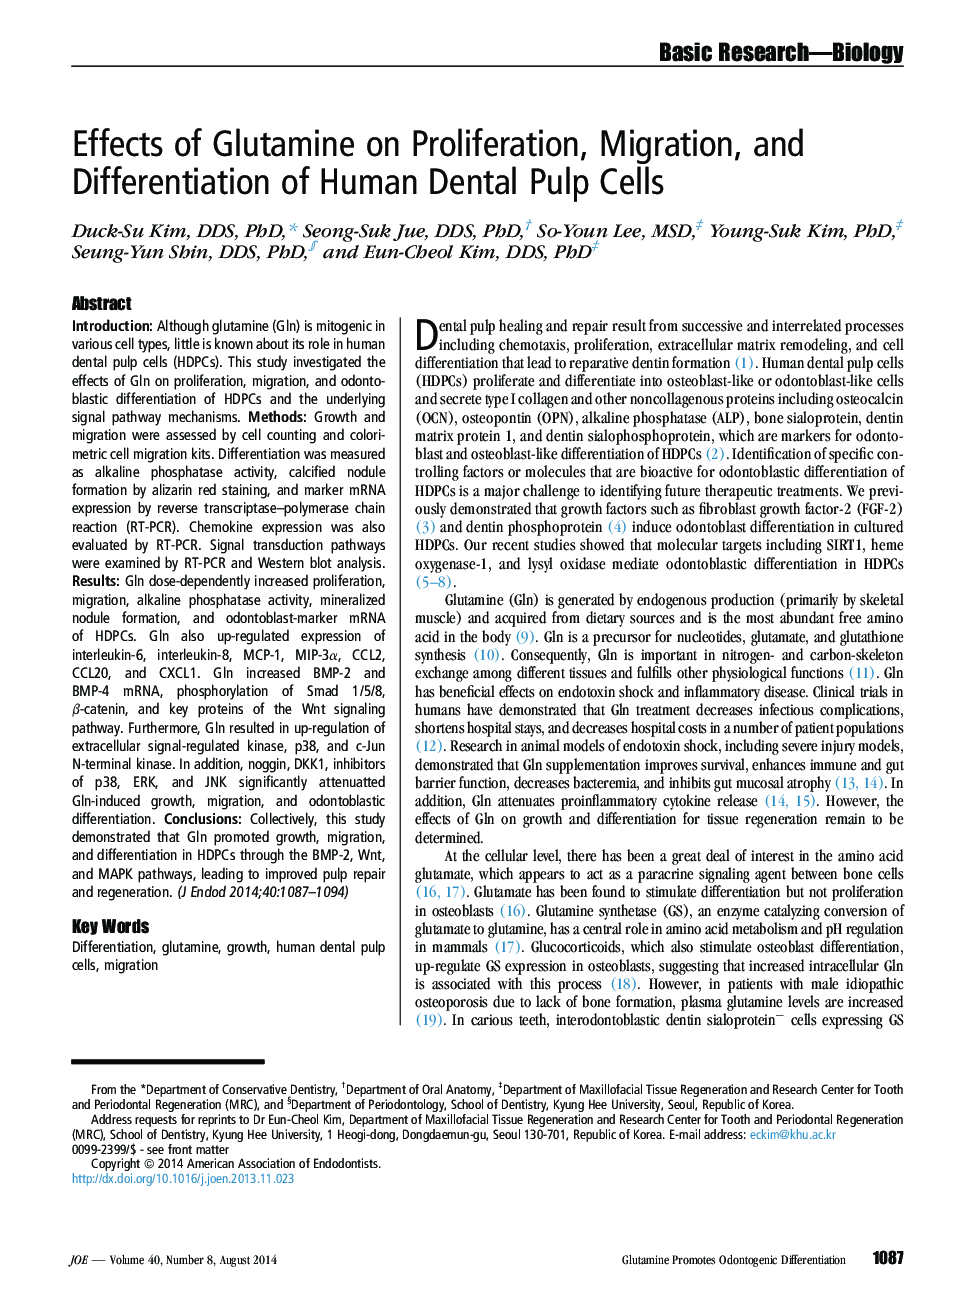 اثر گلوتامین بر گسترش، مهاجرت و تمایز سلولهای پالپ دندان انسانی 